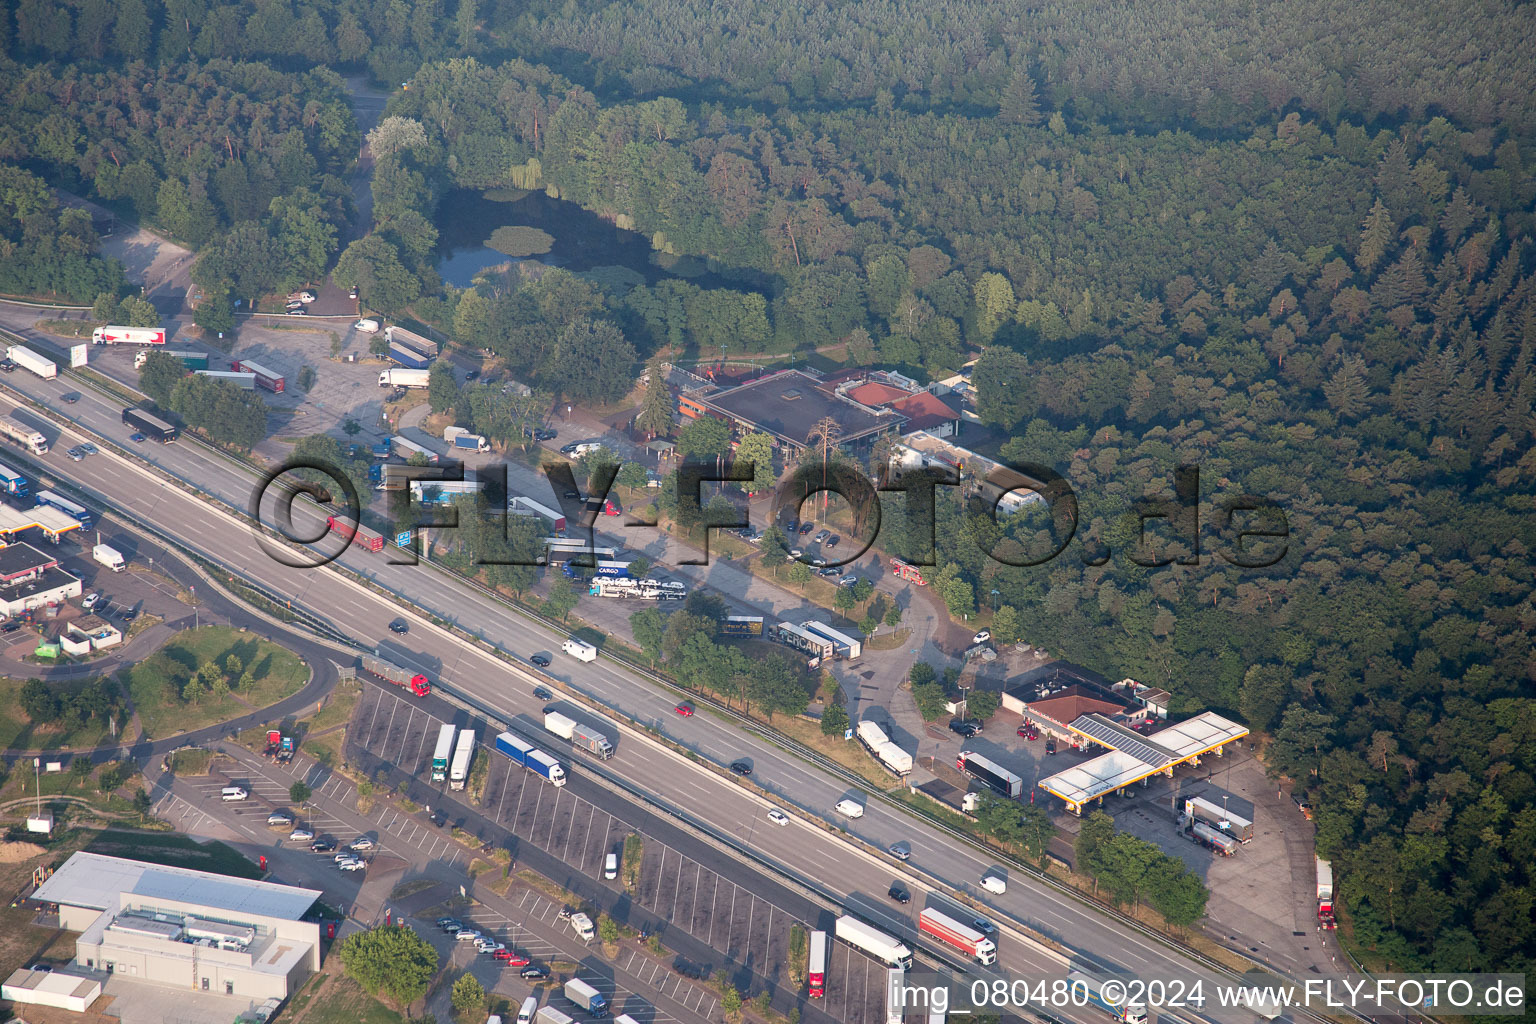 Vue aérienne de Aire d'autoroute sur l'axe de circulation et les sens du BAB A5 à Forst dans le département Bade-Wurtemberg, Allemagne